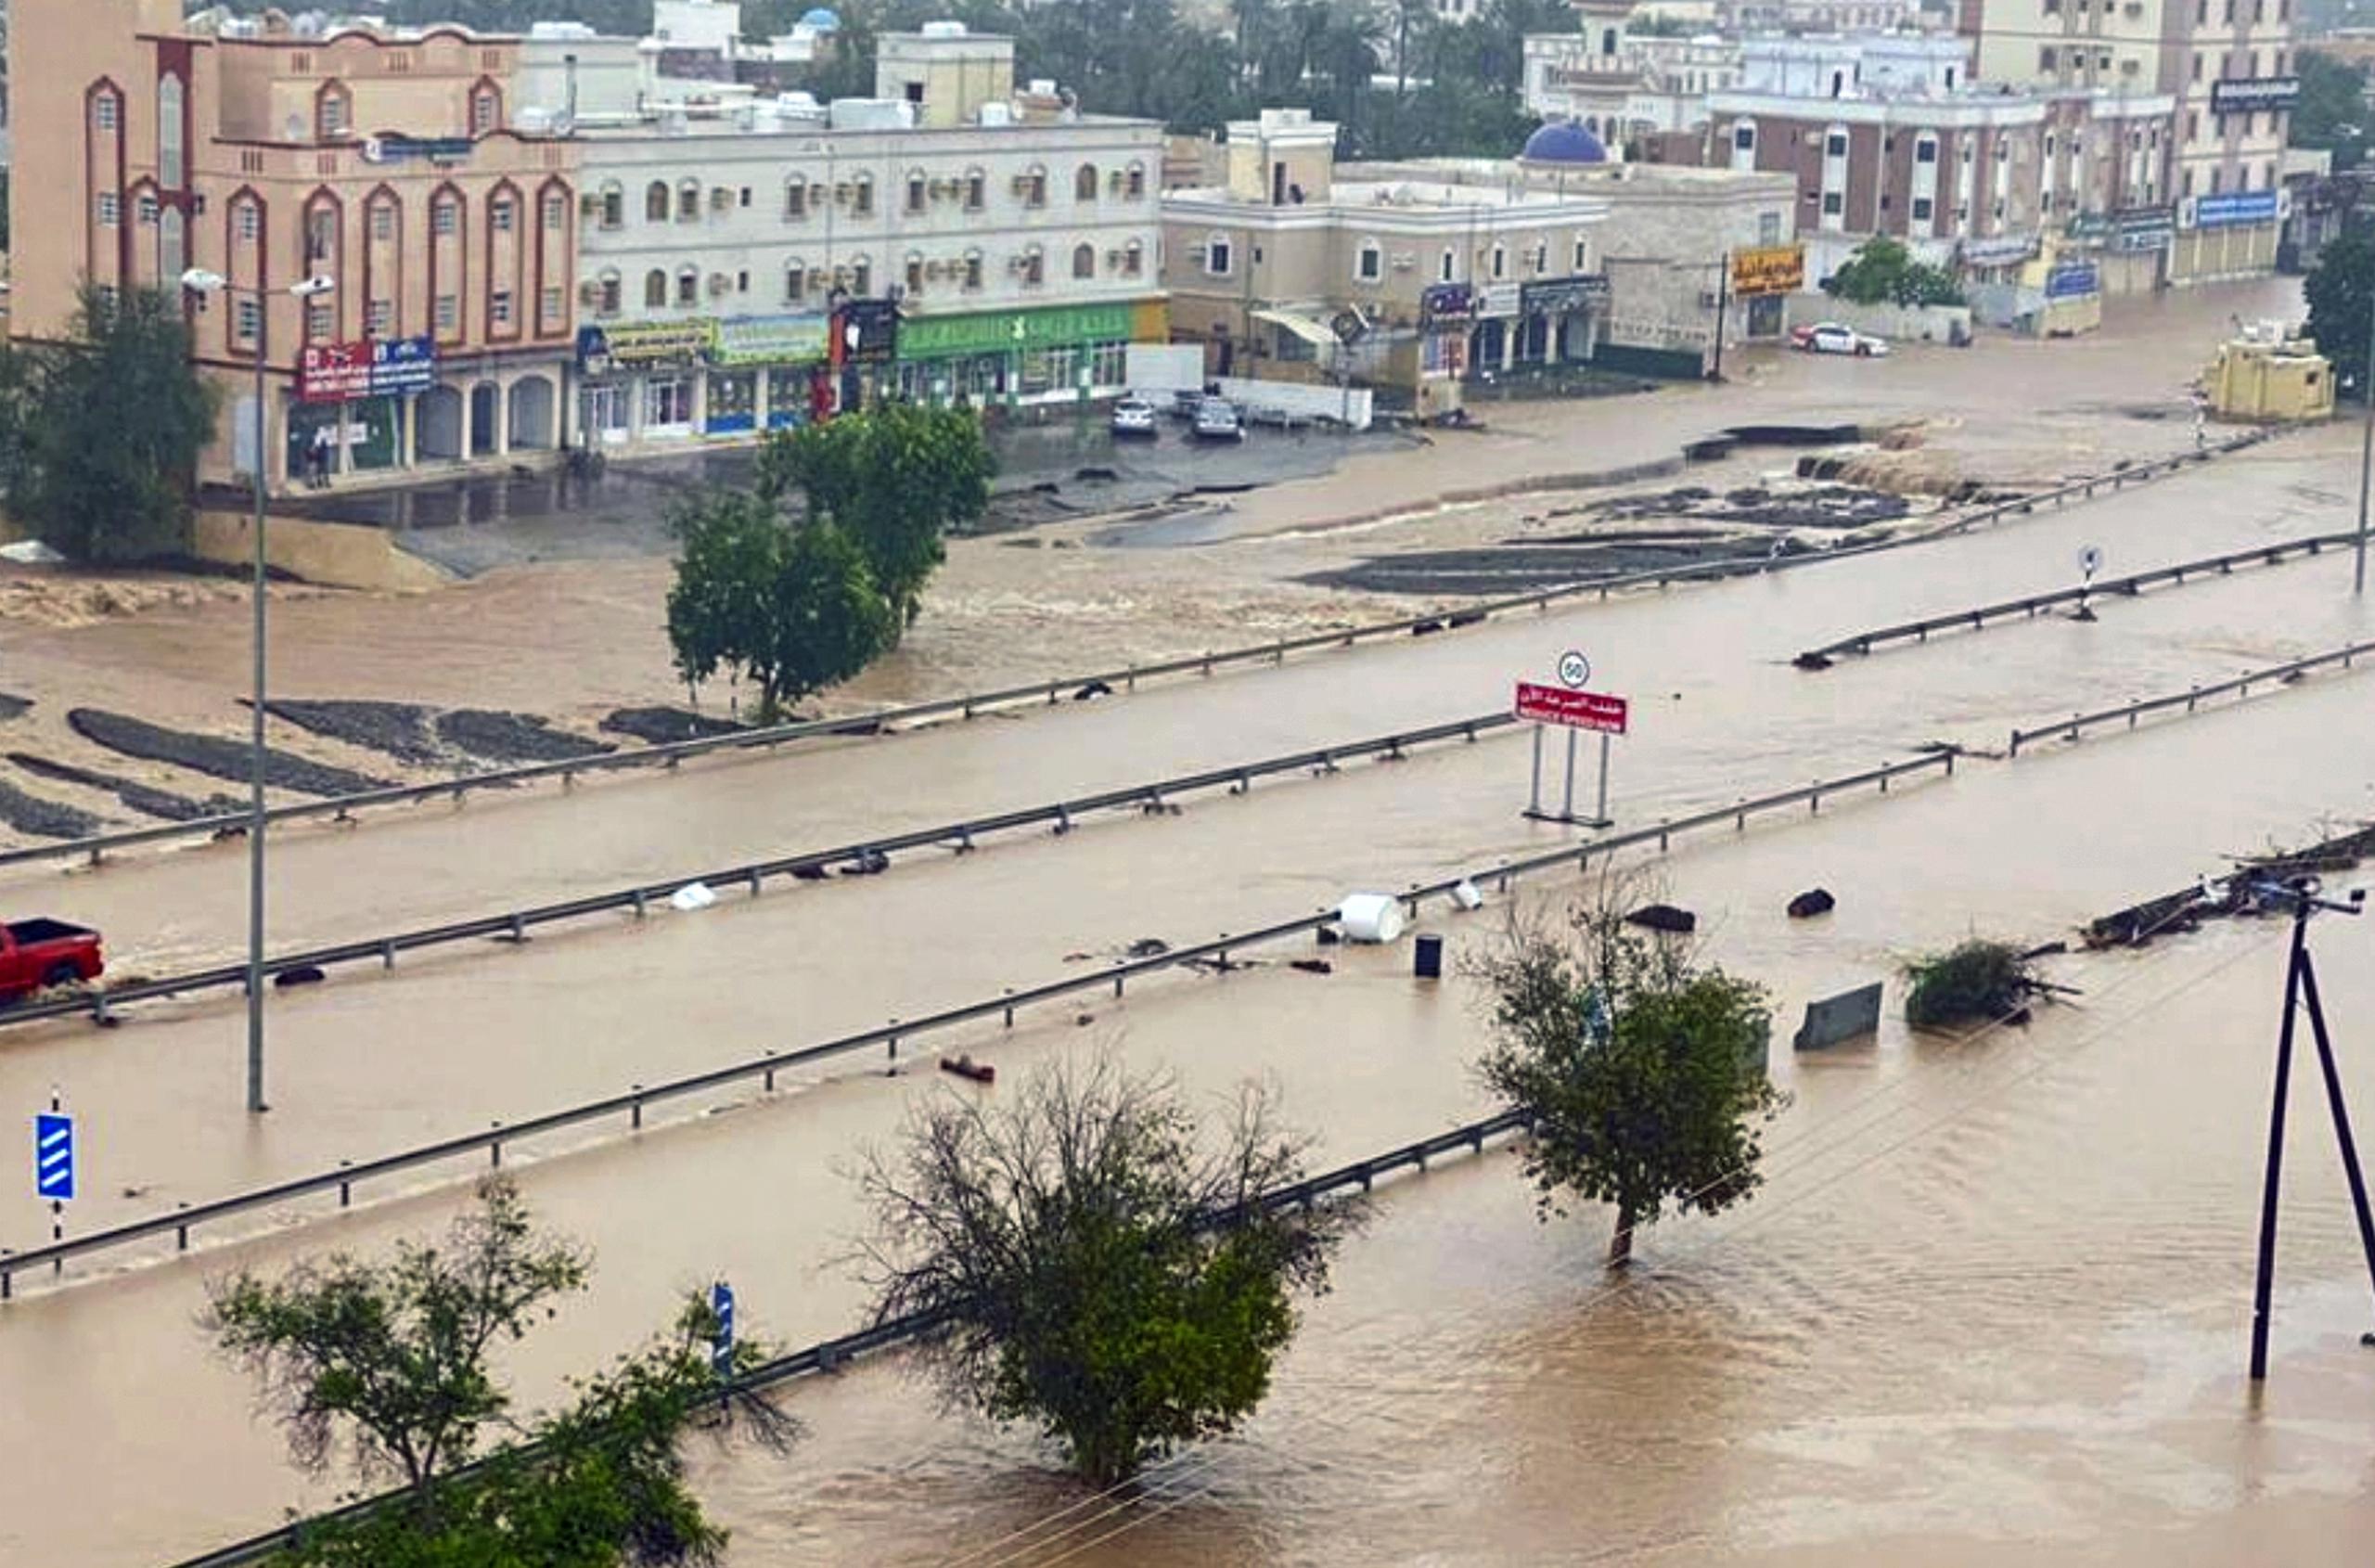 Esta foto publicada por la Agencia de Noticias de Omán muestra una calle inundada del distrito de Al Khaburah después del ciclón Shaheen, en Omán, el lunes 4 de octubre de 2021. (Agencia de Noticias de Omán vía AP)